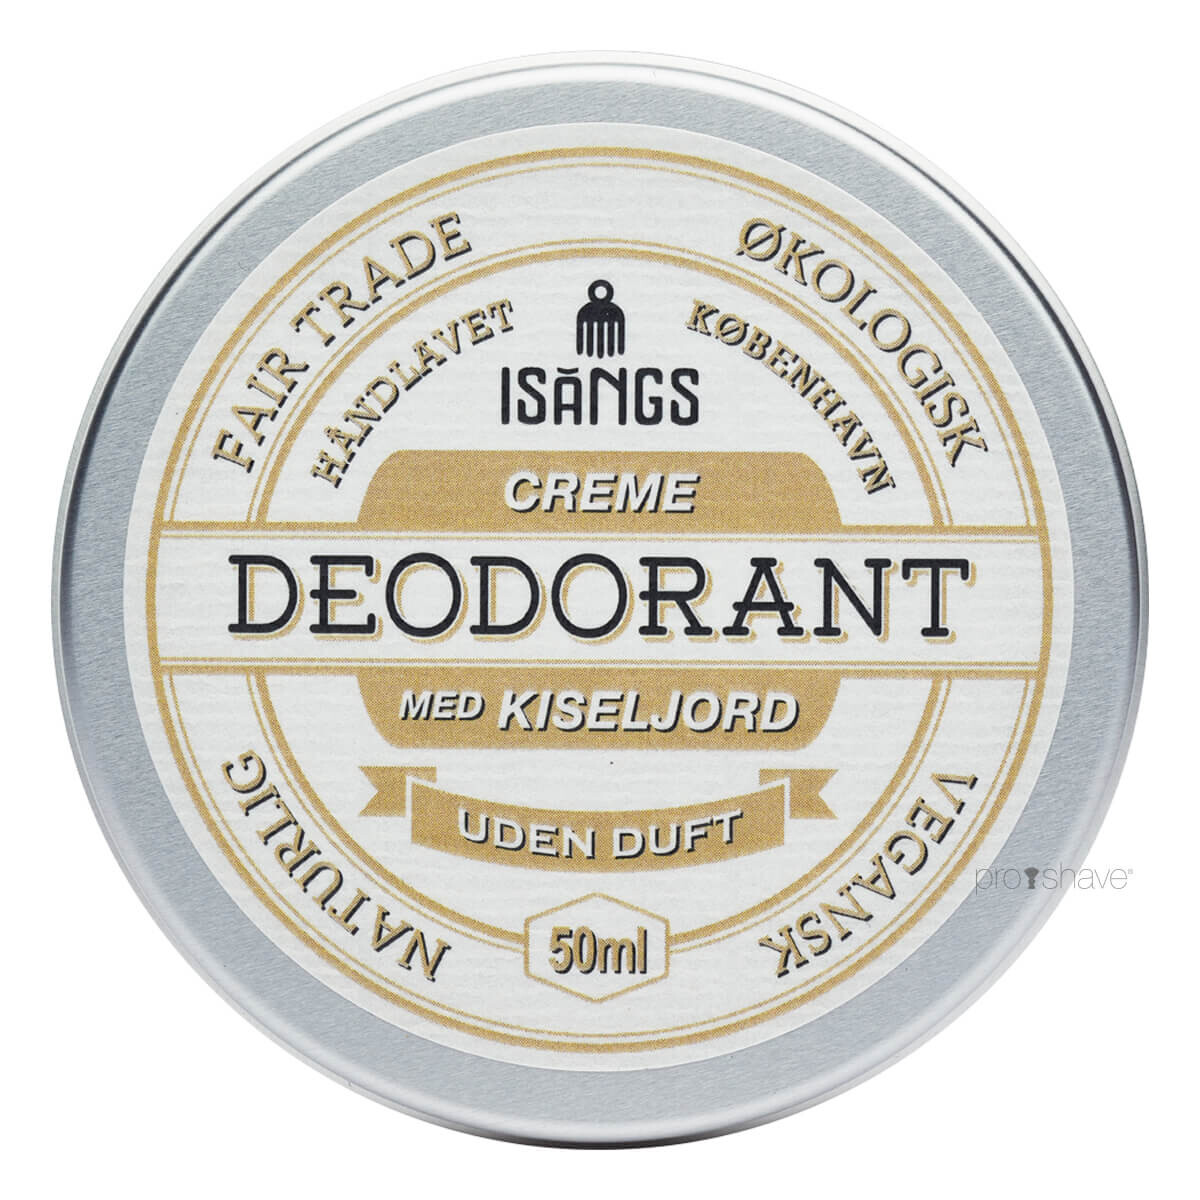 Isangs Creme Deodorant med Kiseljord, Uden duft, 50 ml.